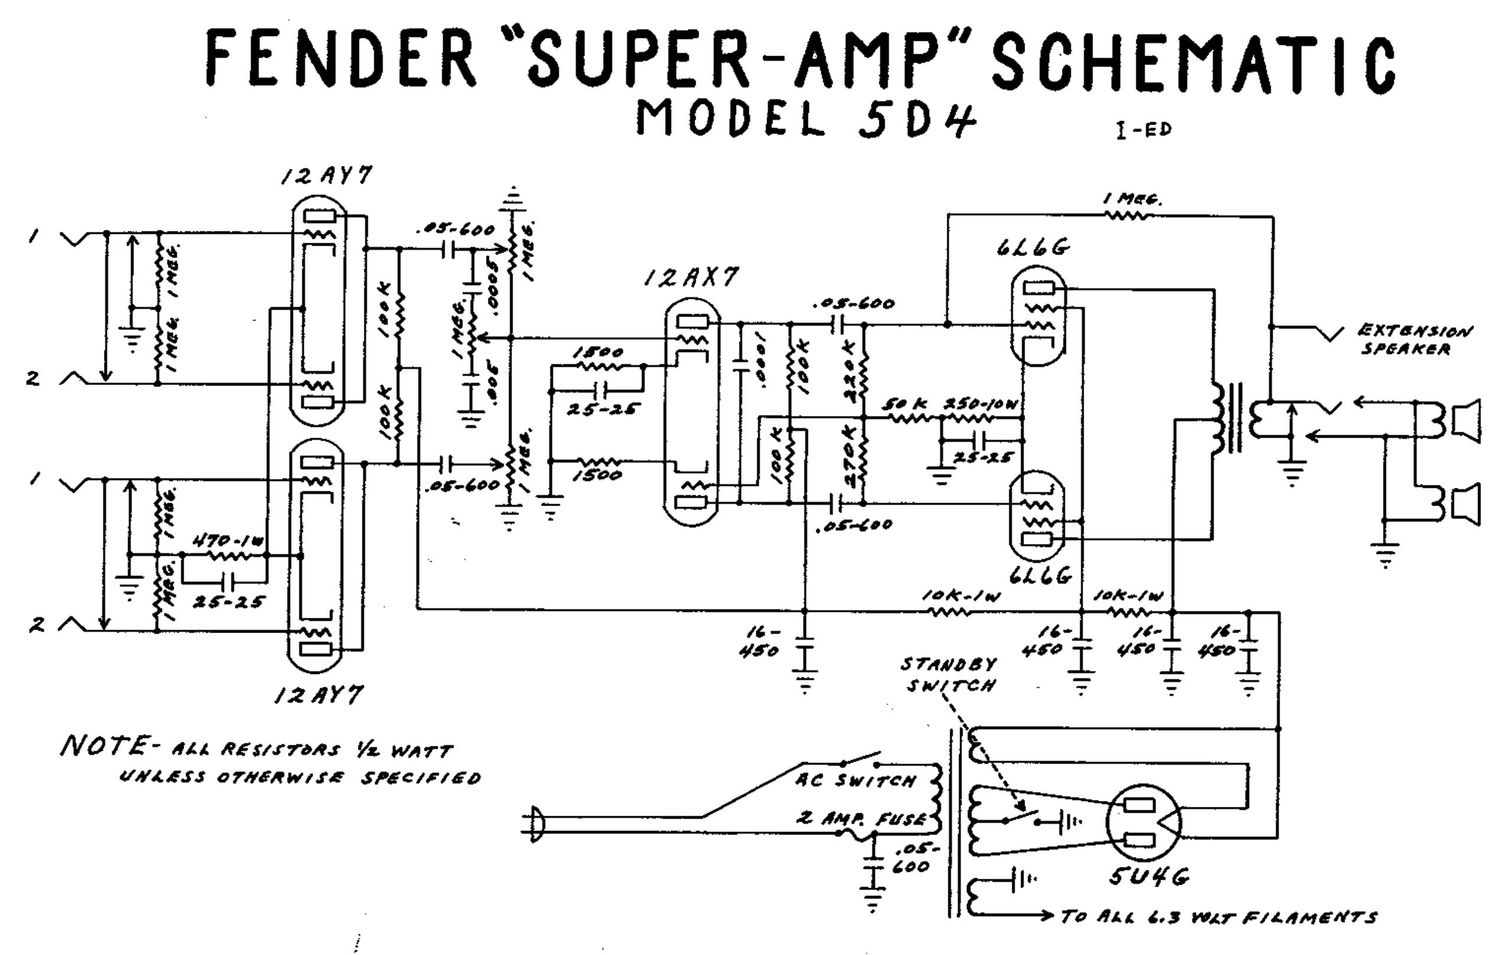 fender super 5d4 schematic